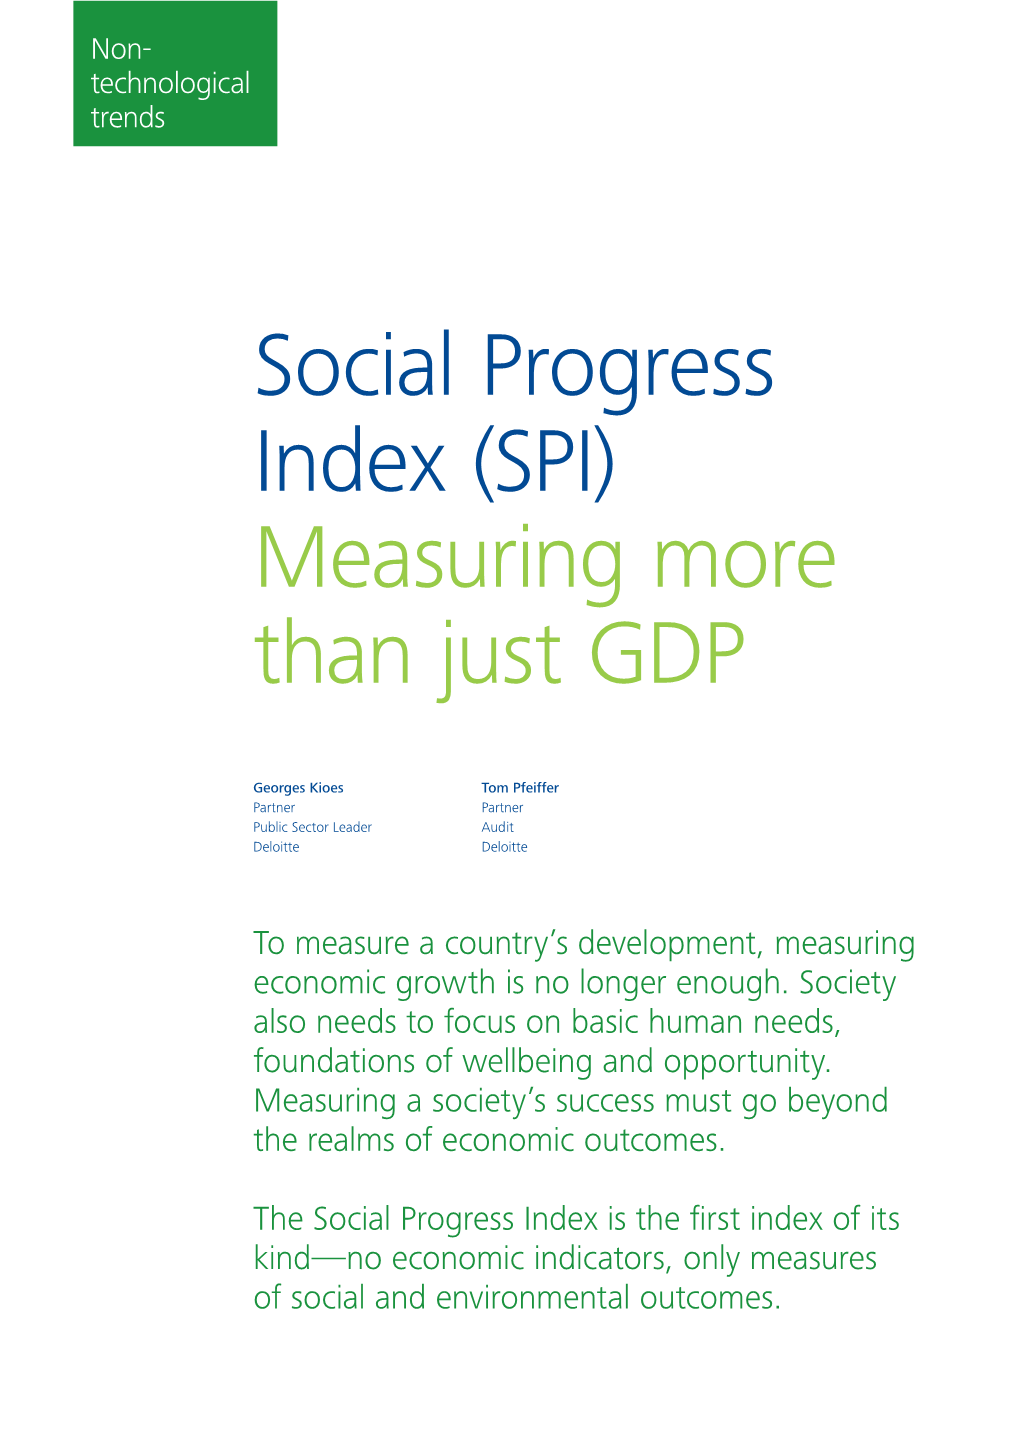 Social Progress Index (SPI) Measuring More Than Just GDP